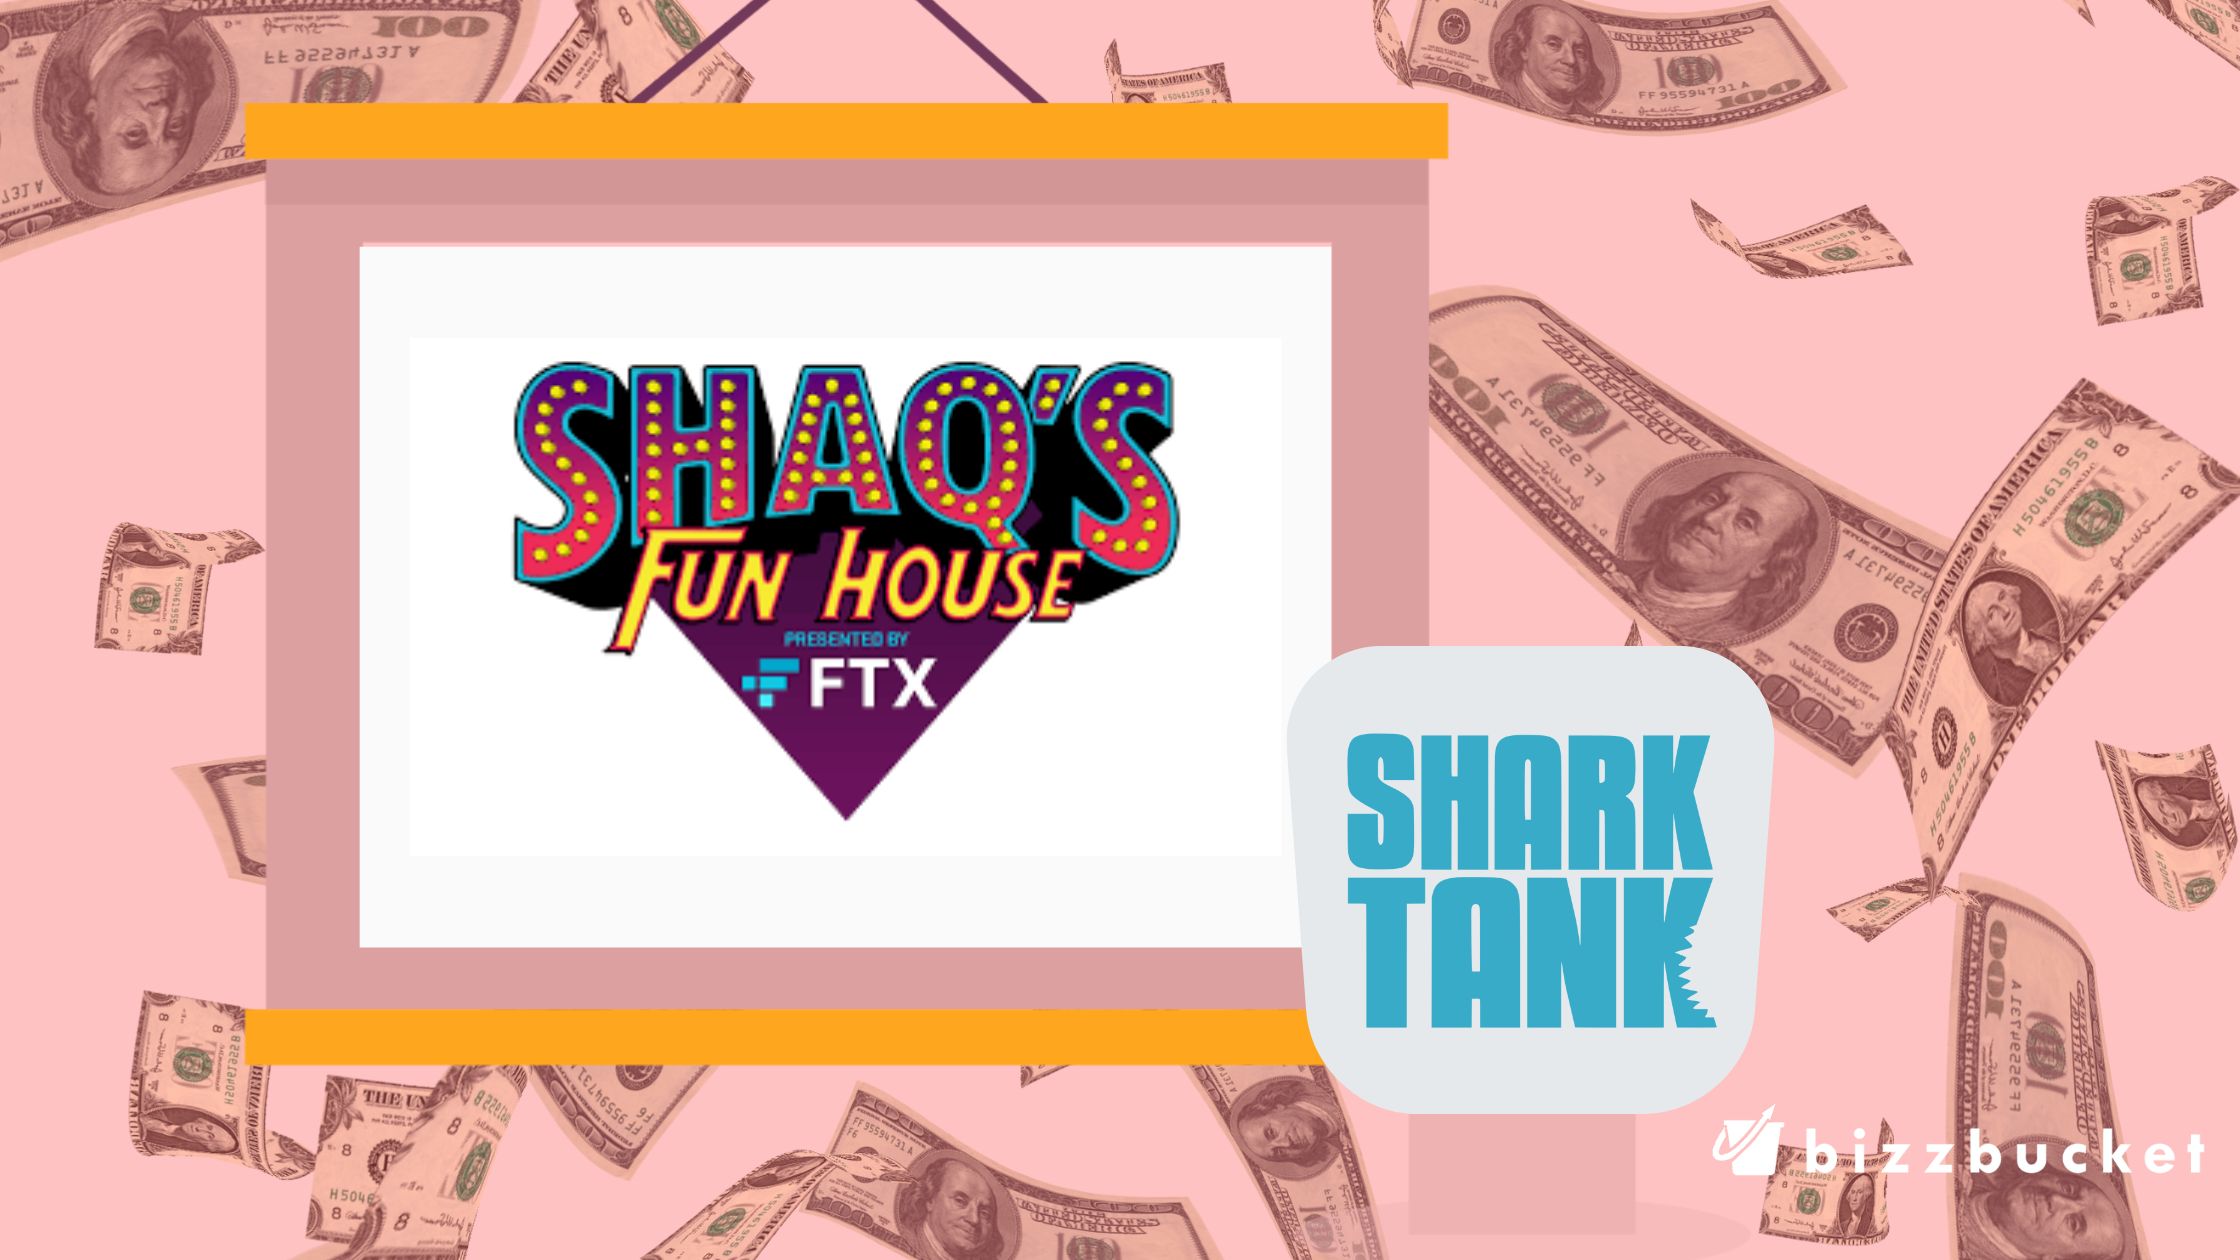 FunHouse shark tank update